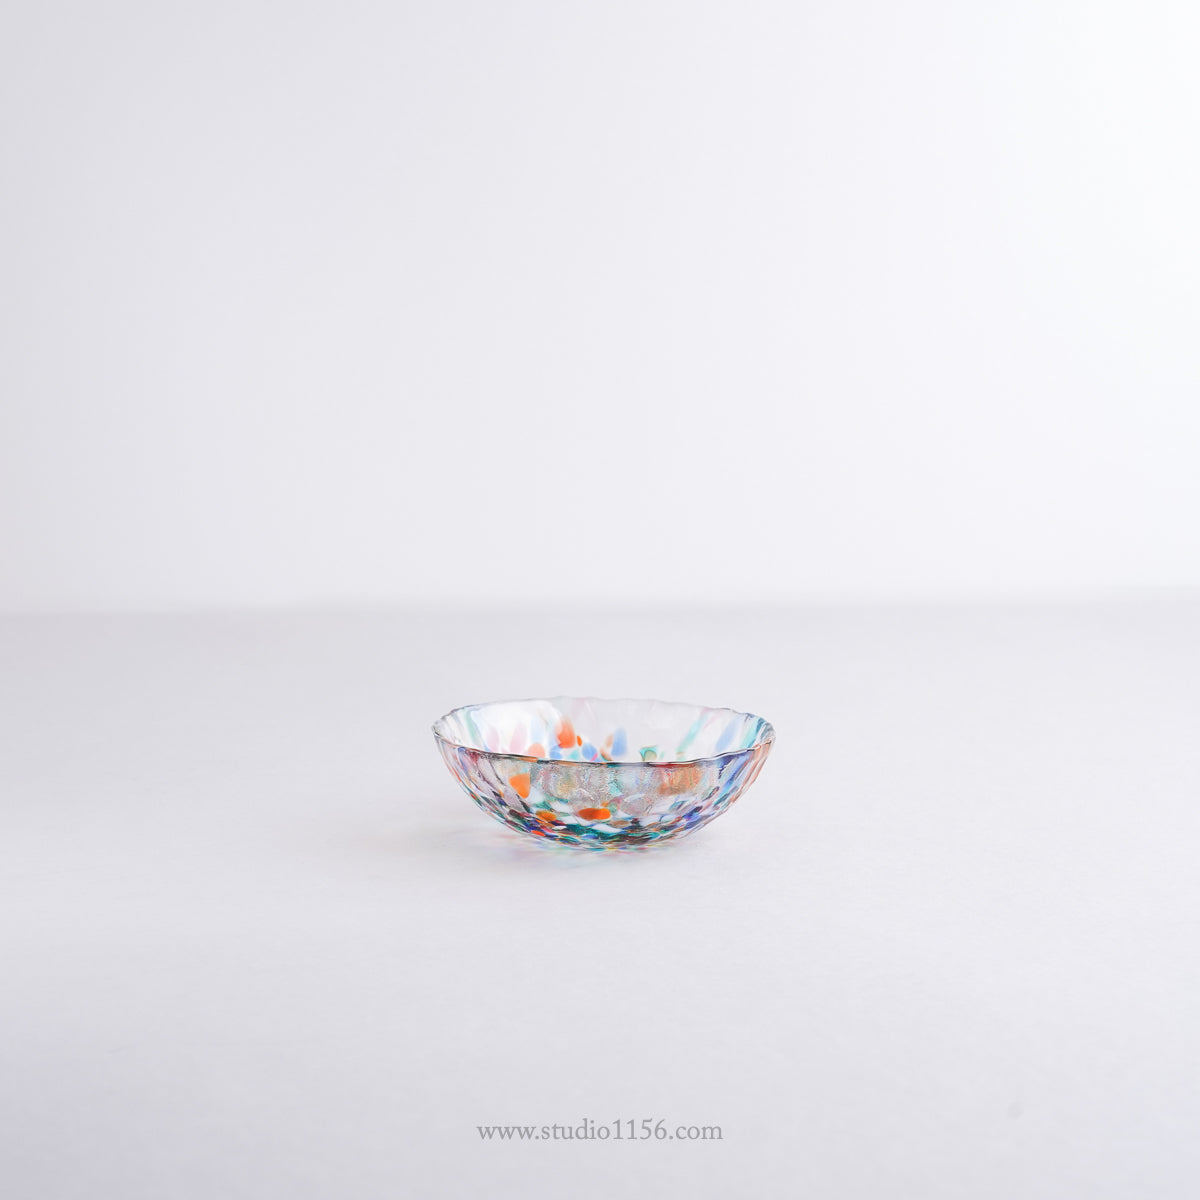 硝子食器 津軽びいどろ ねぶた浅小鉢 10.5cm Tsugaru-Vidro Studio1156